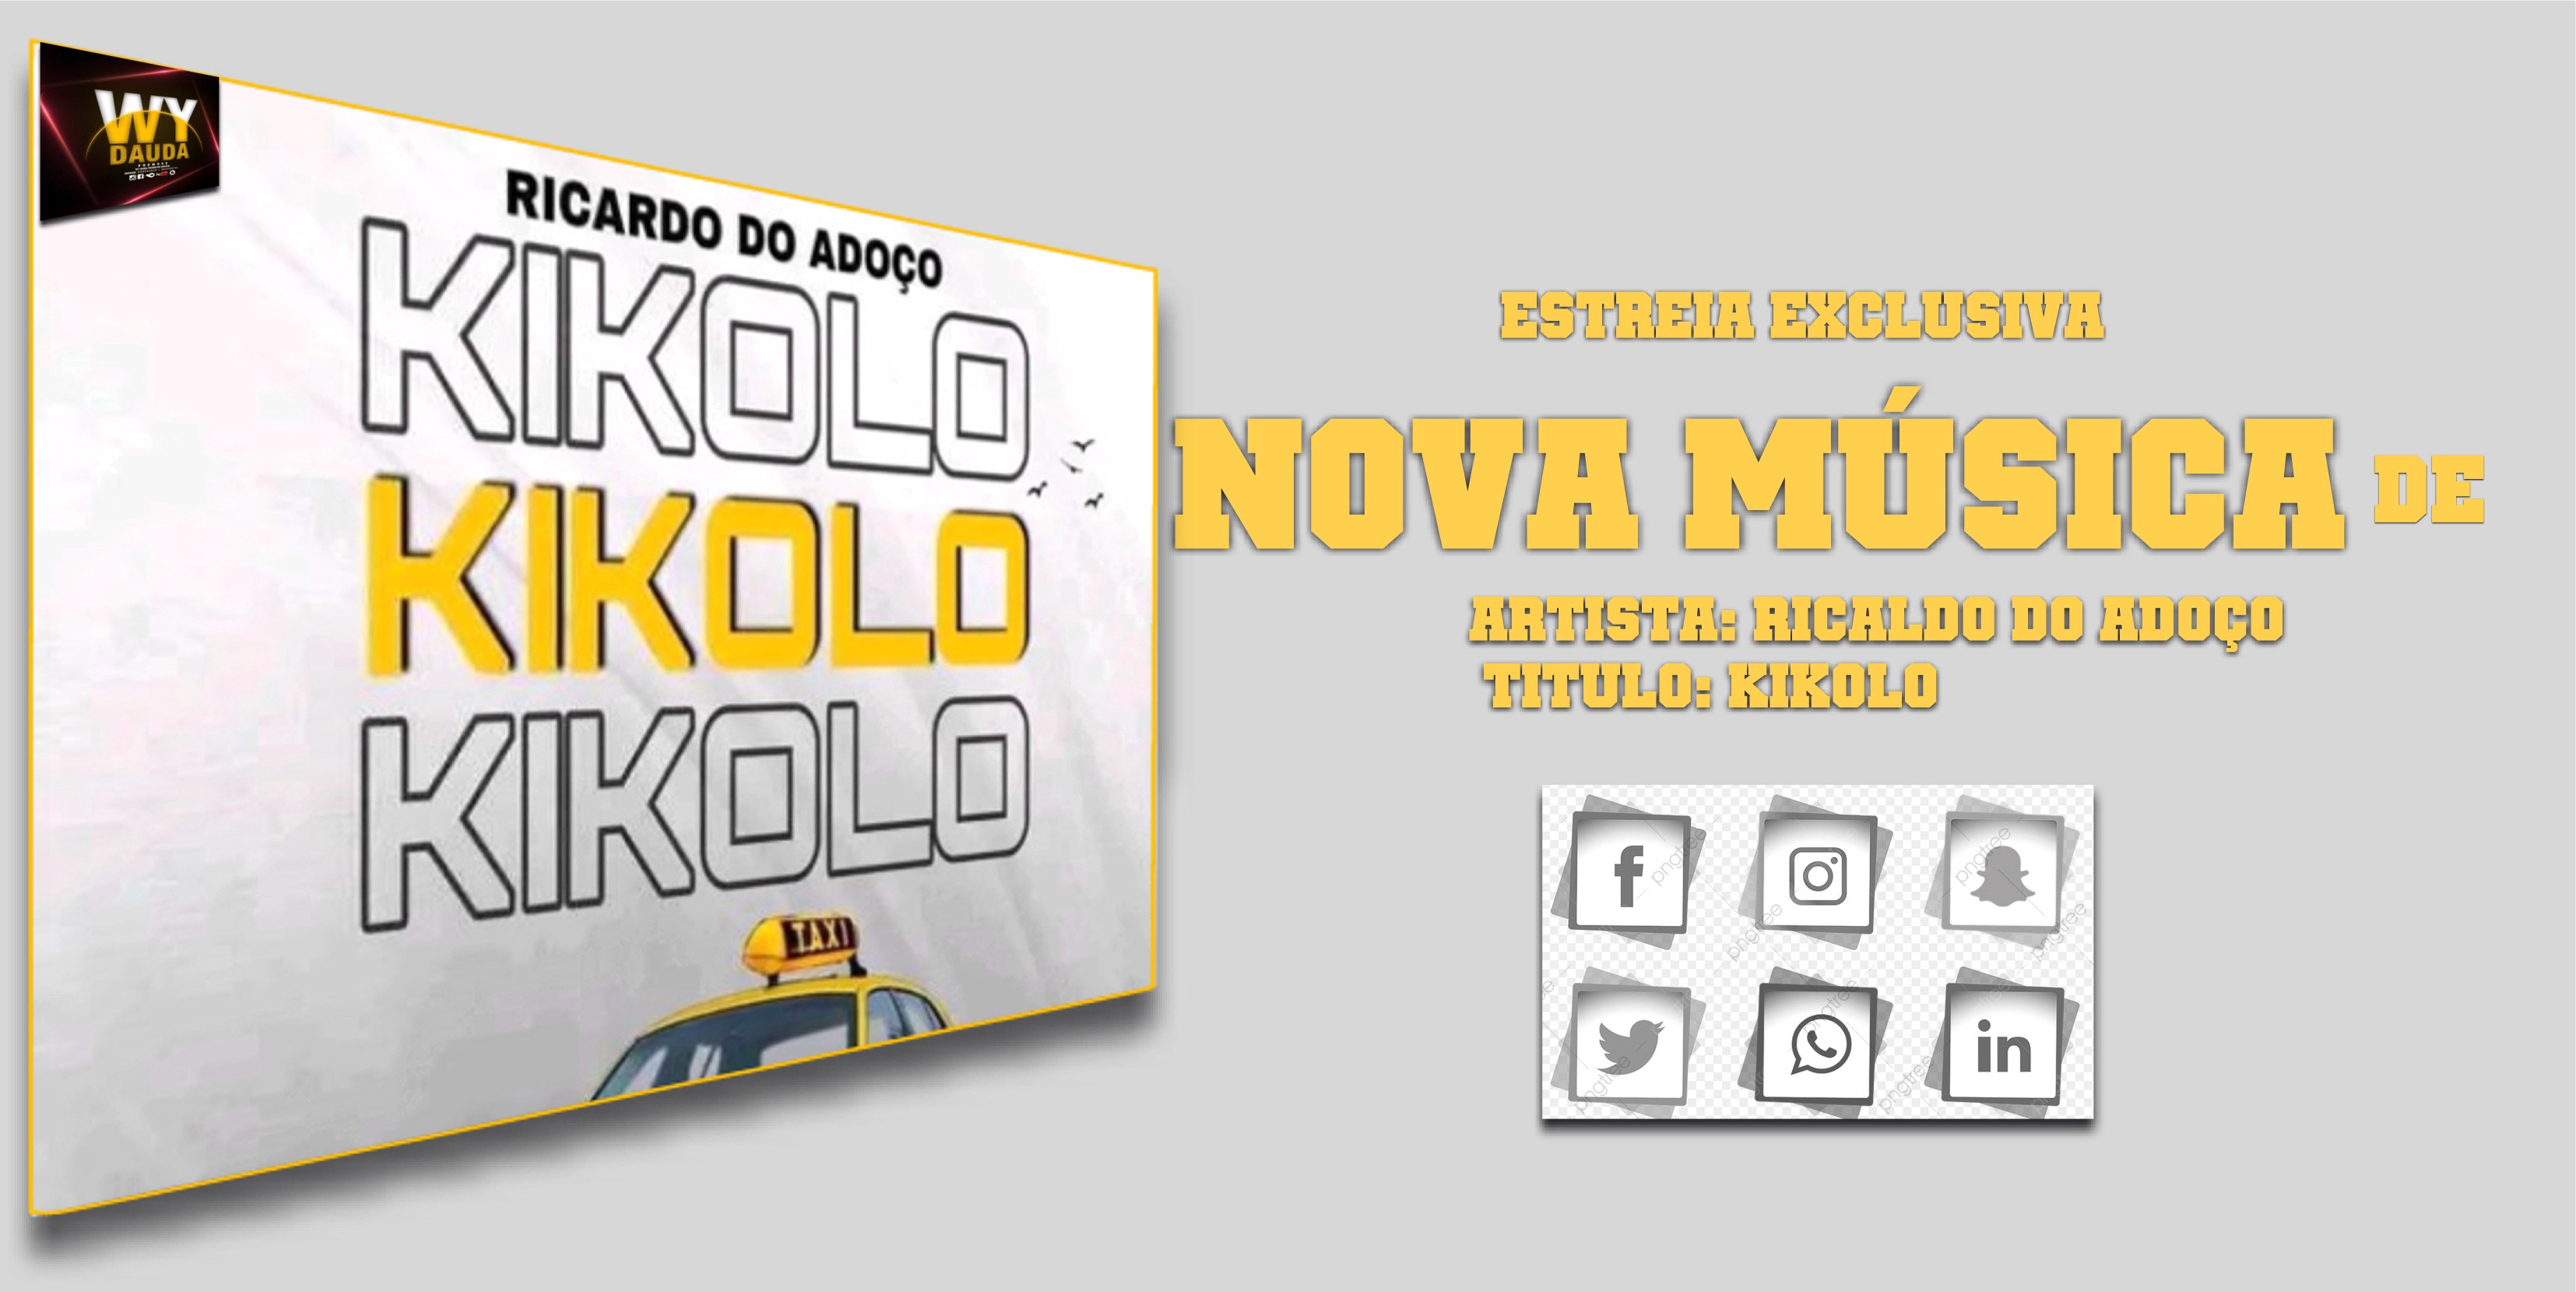 Ricardo Do Adoçoj - Kikolo